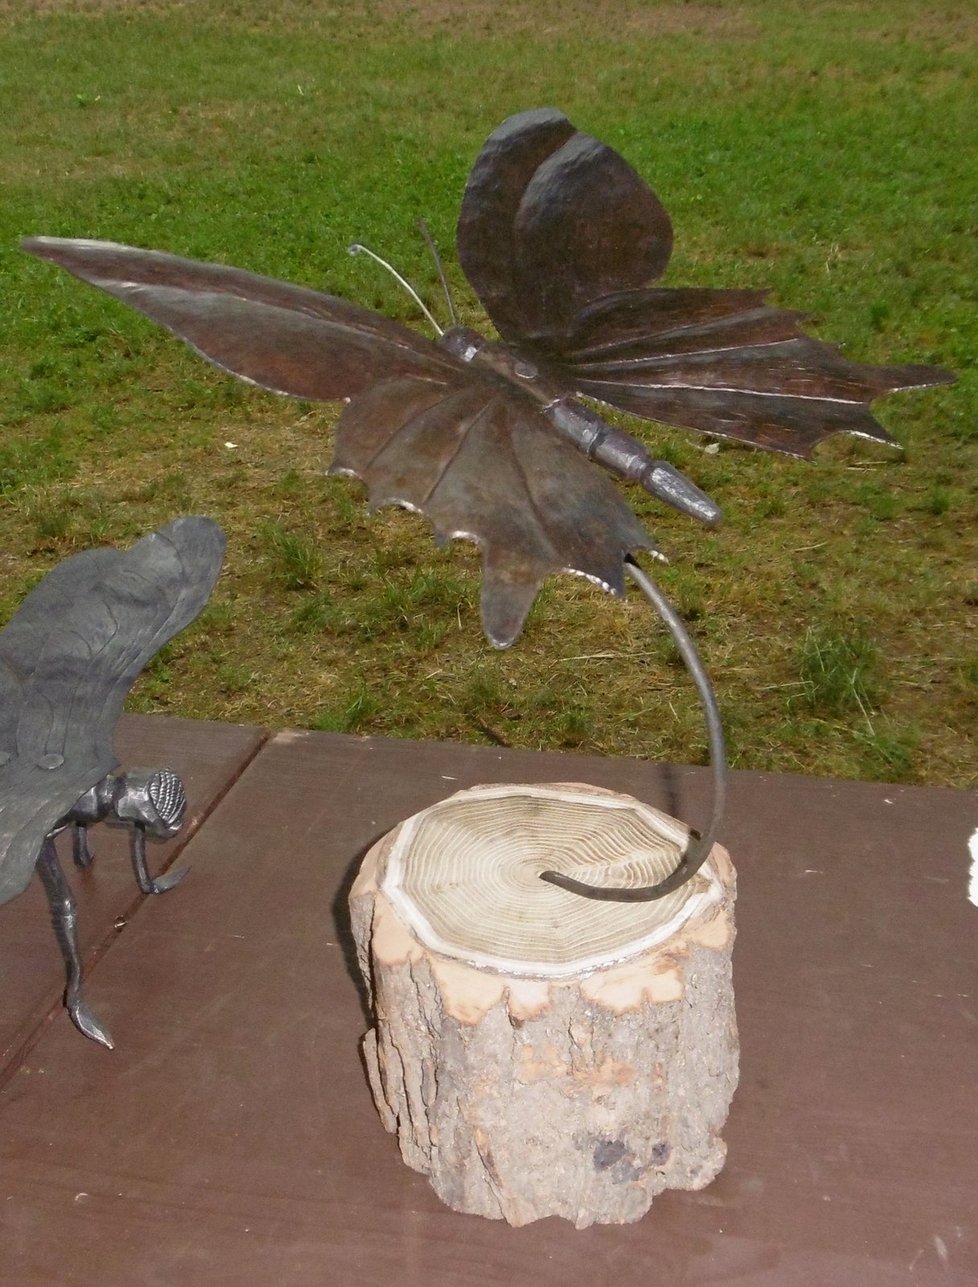 Tohoto kovového motýla vyrobila Simona Holá (17) a obsadila s ním 1. místo na setkání kovářů v Litni u Prahy.